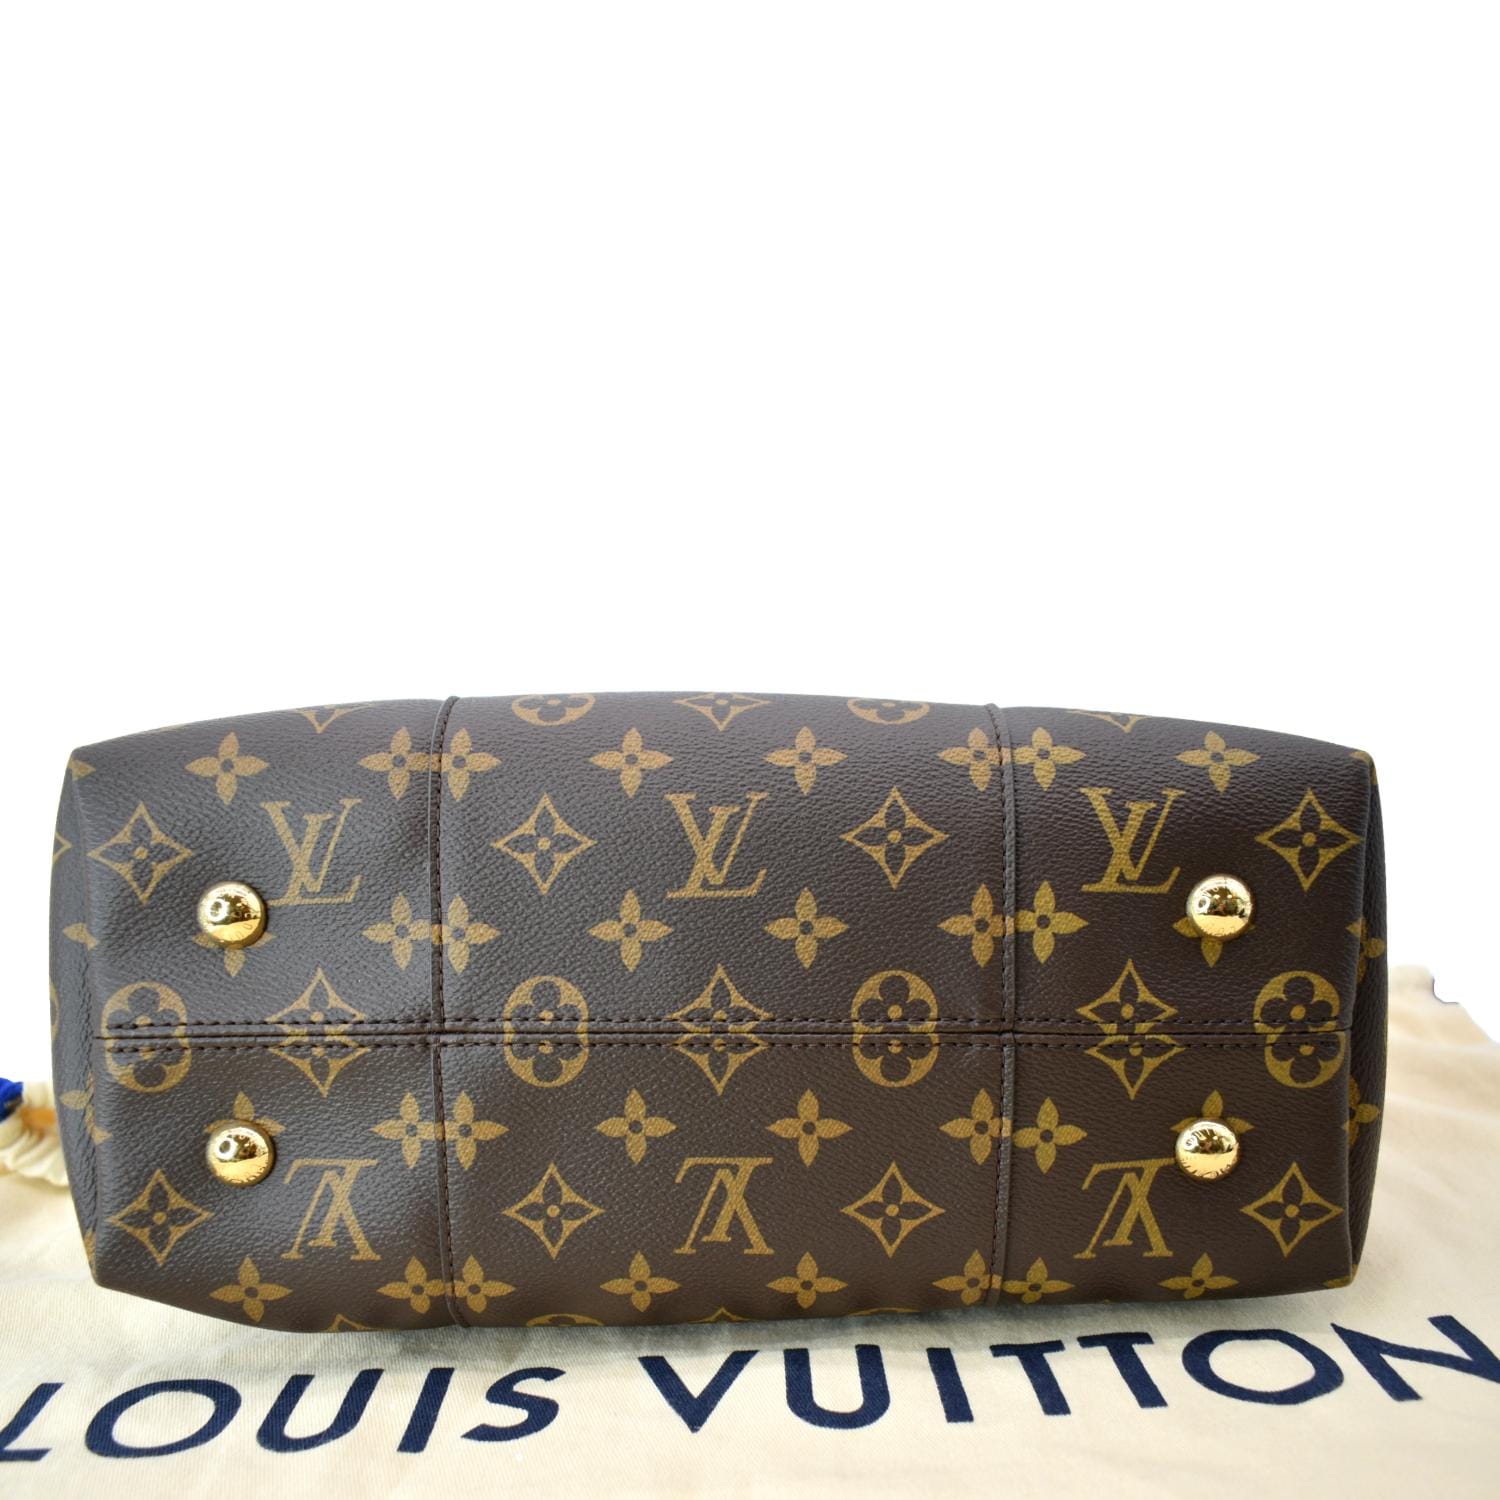 Louis Vuitton Melie hobo 1495.00 ❌sold❌please DM